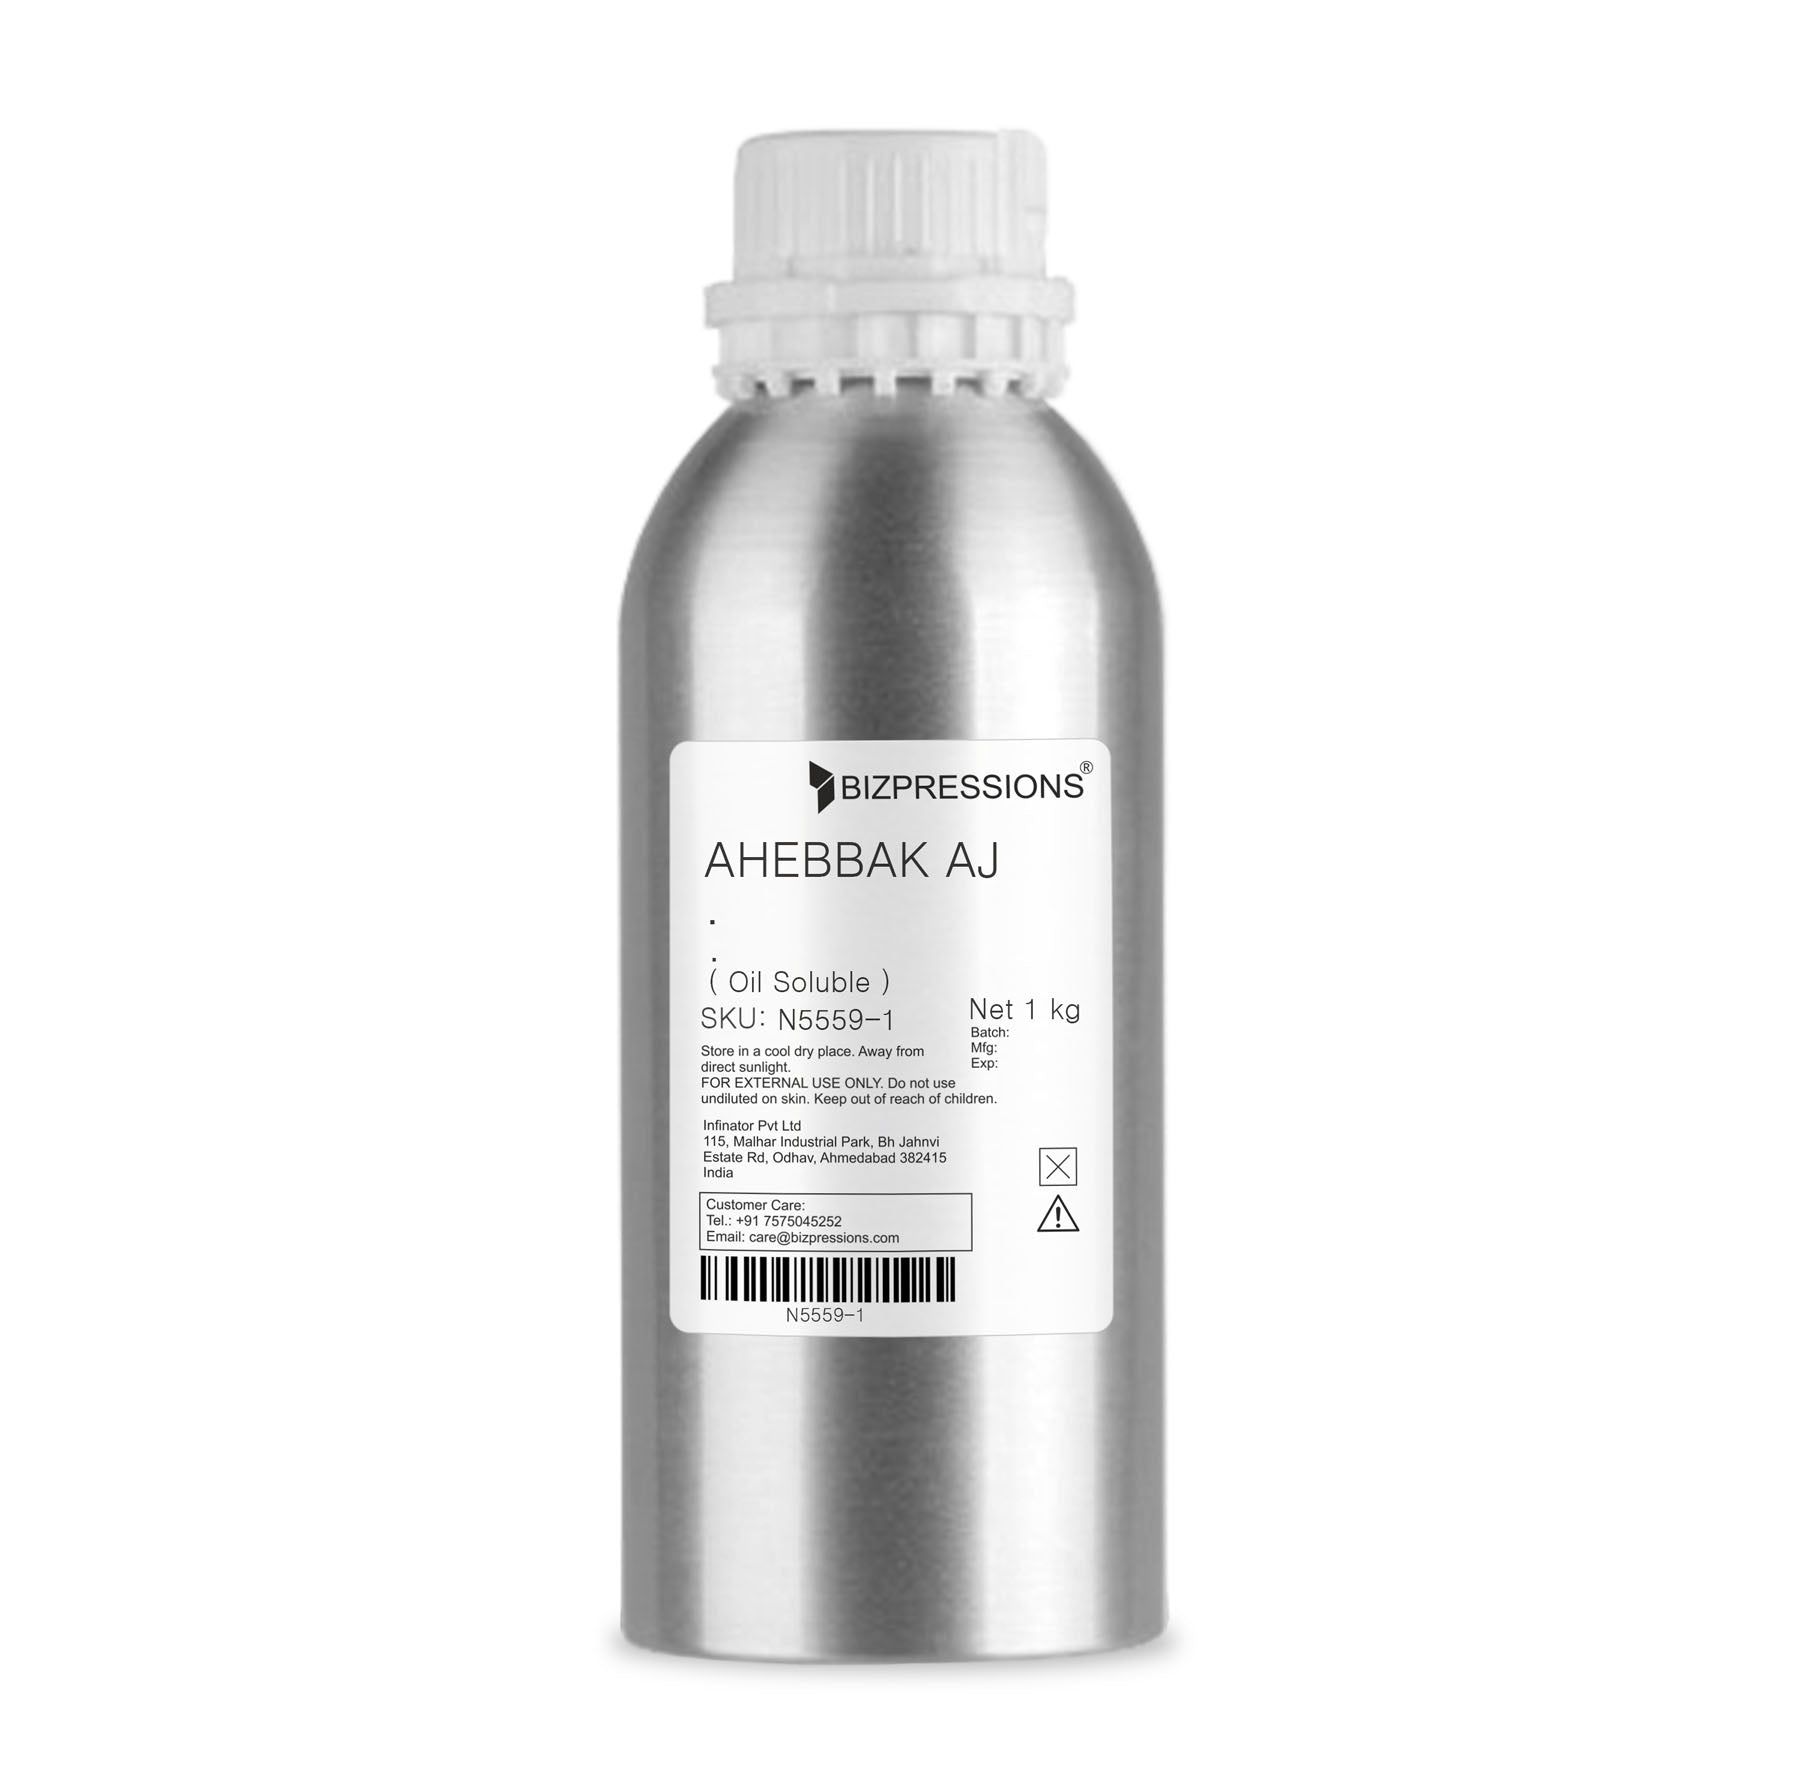 AHEBBAK AJ - Fragrance ( Oil Soluble ) - 1 kg